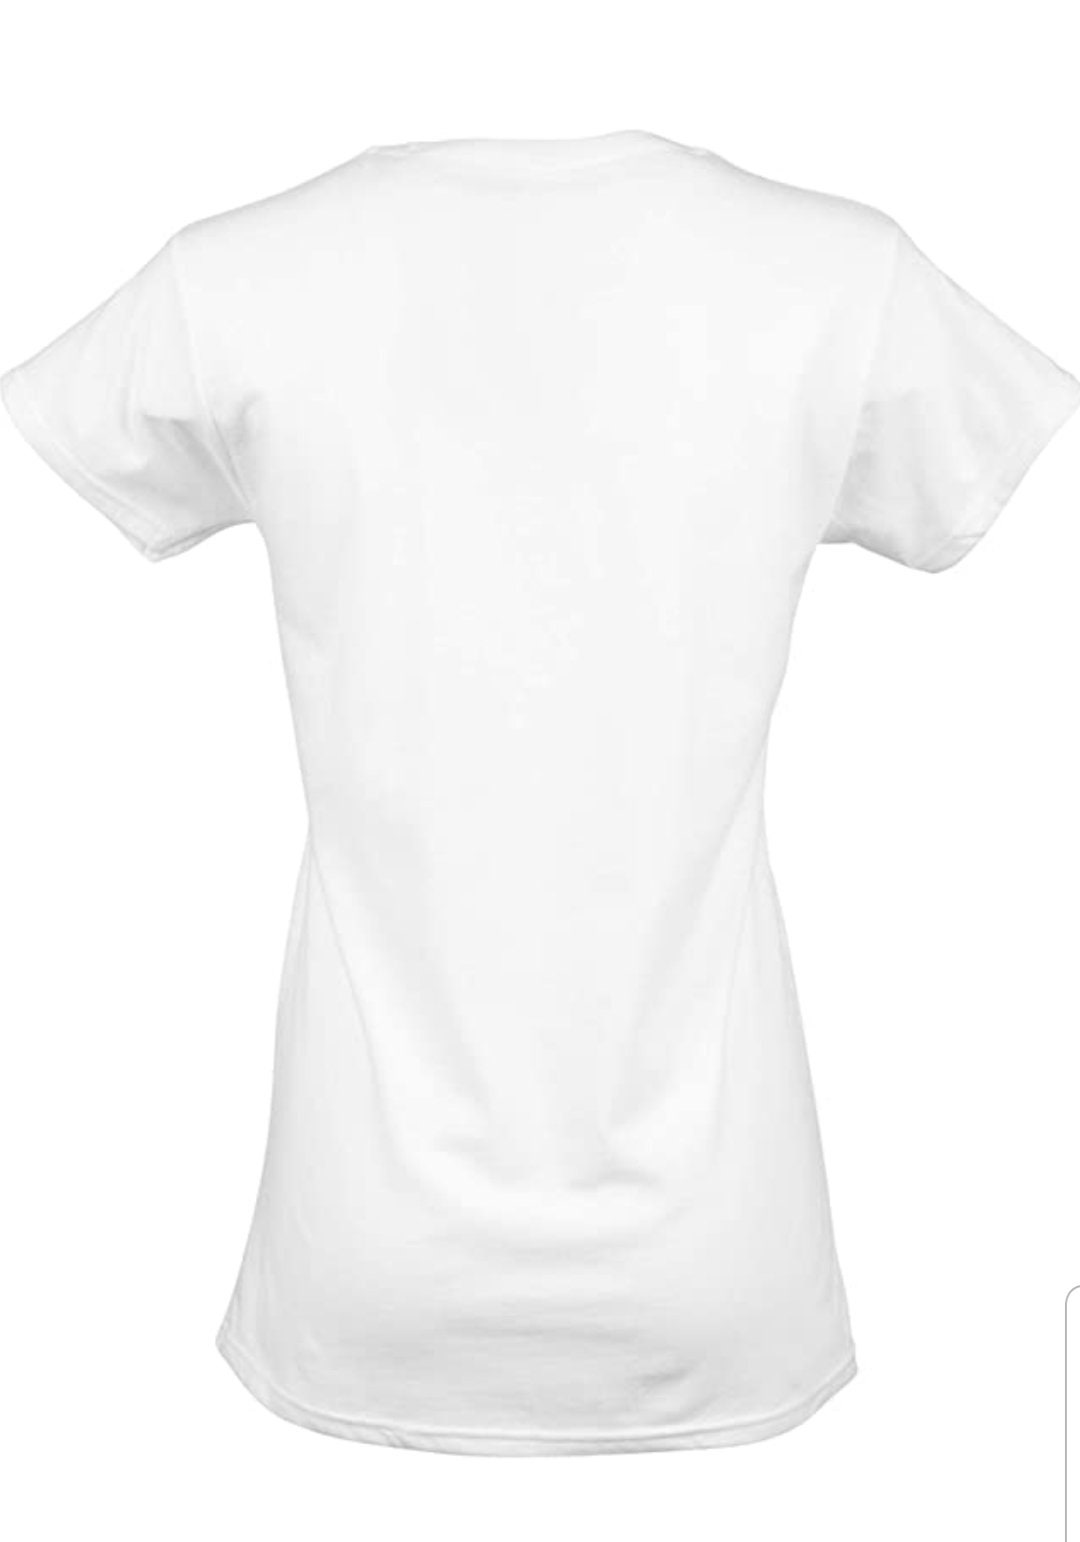 Marijuana Leaf Lady Softstyle Cotton T-shirt White Color - Etsy